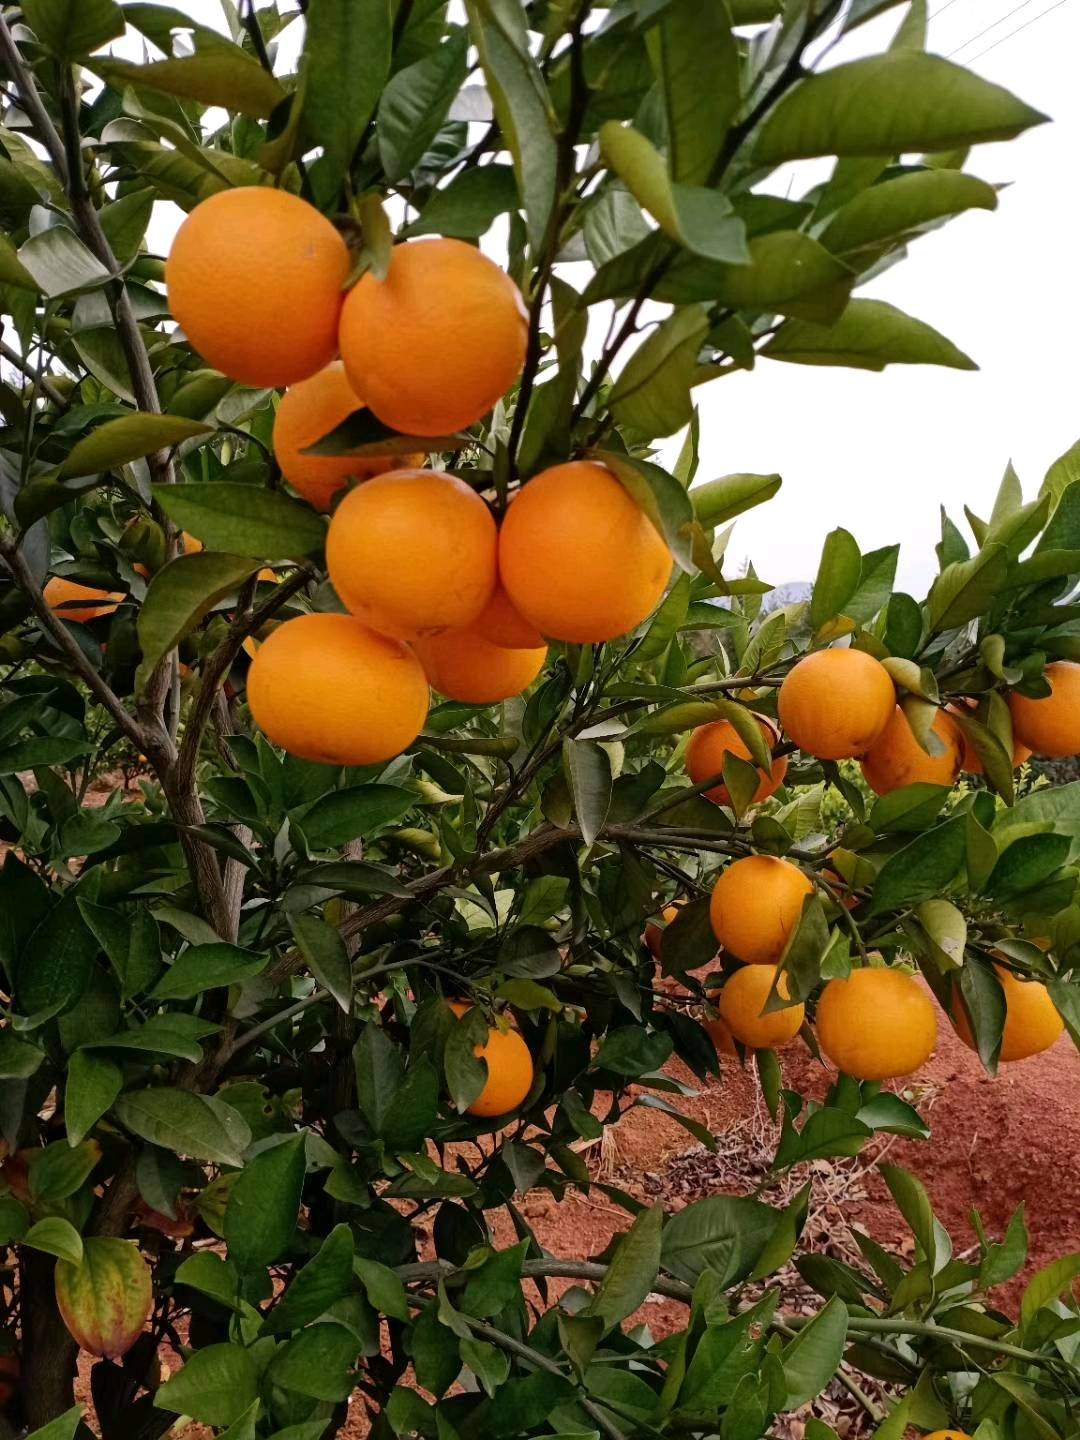 （预售）长期供应大量沃柑血橙 自家果园种植 13600250168